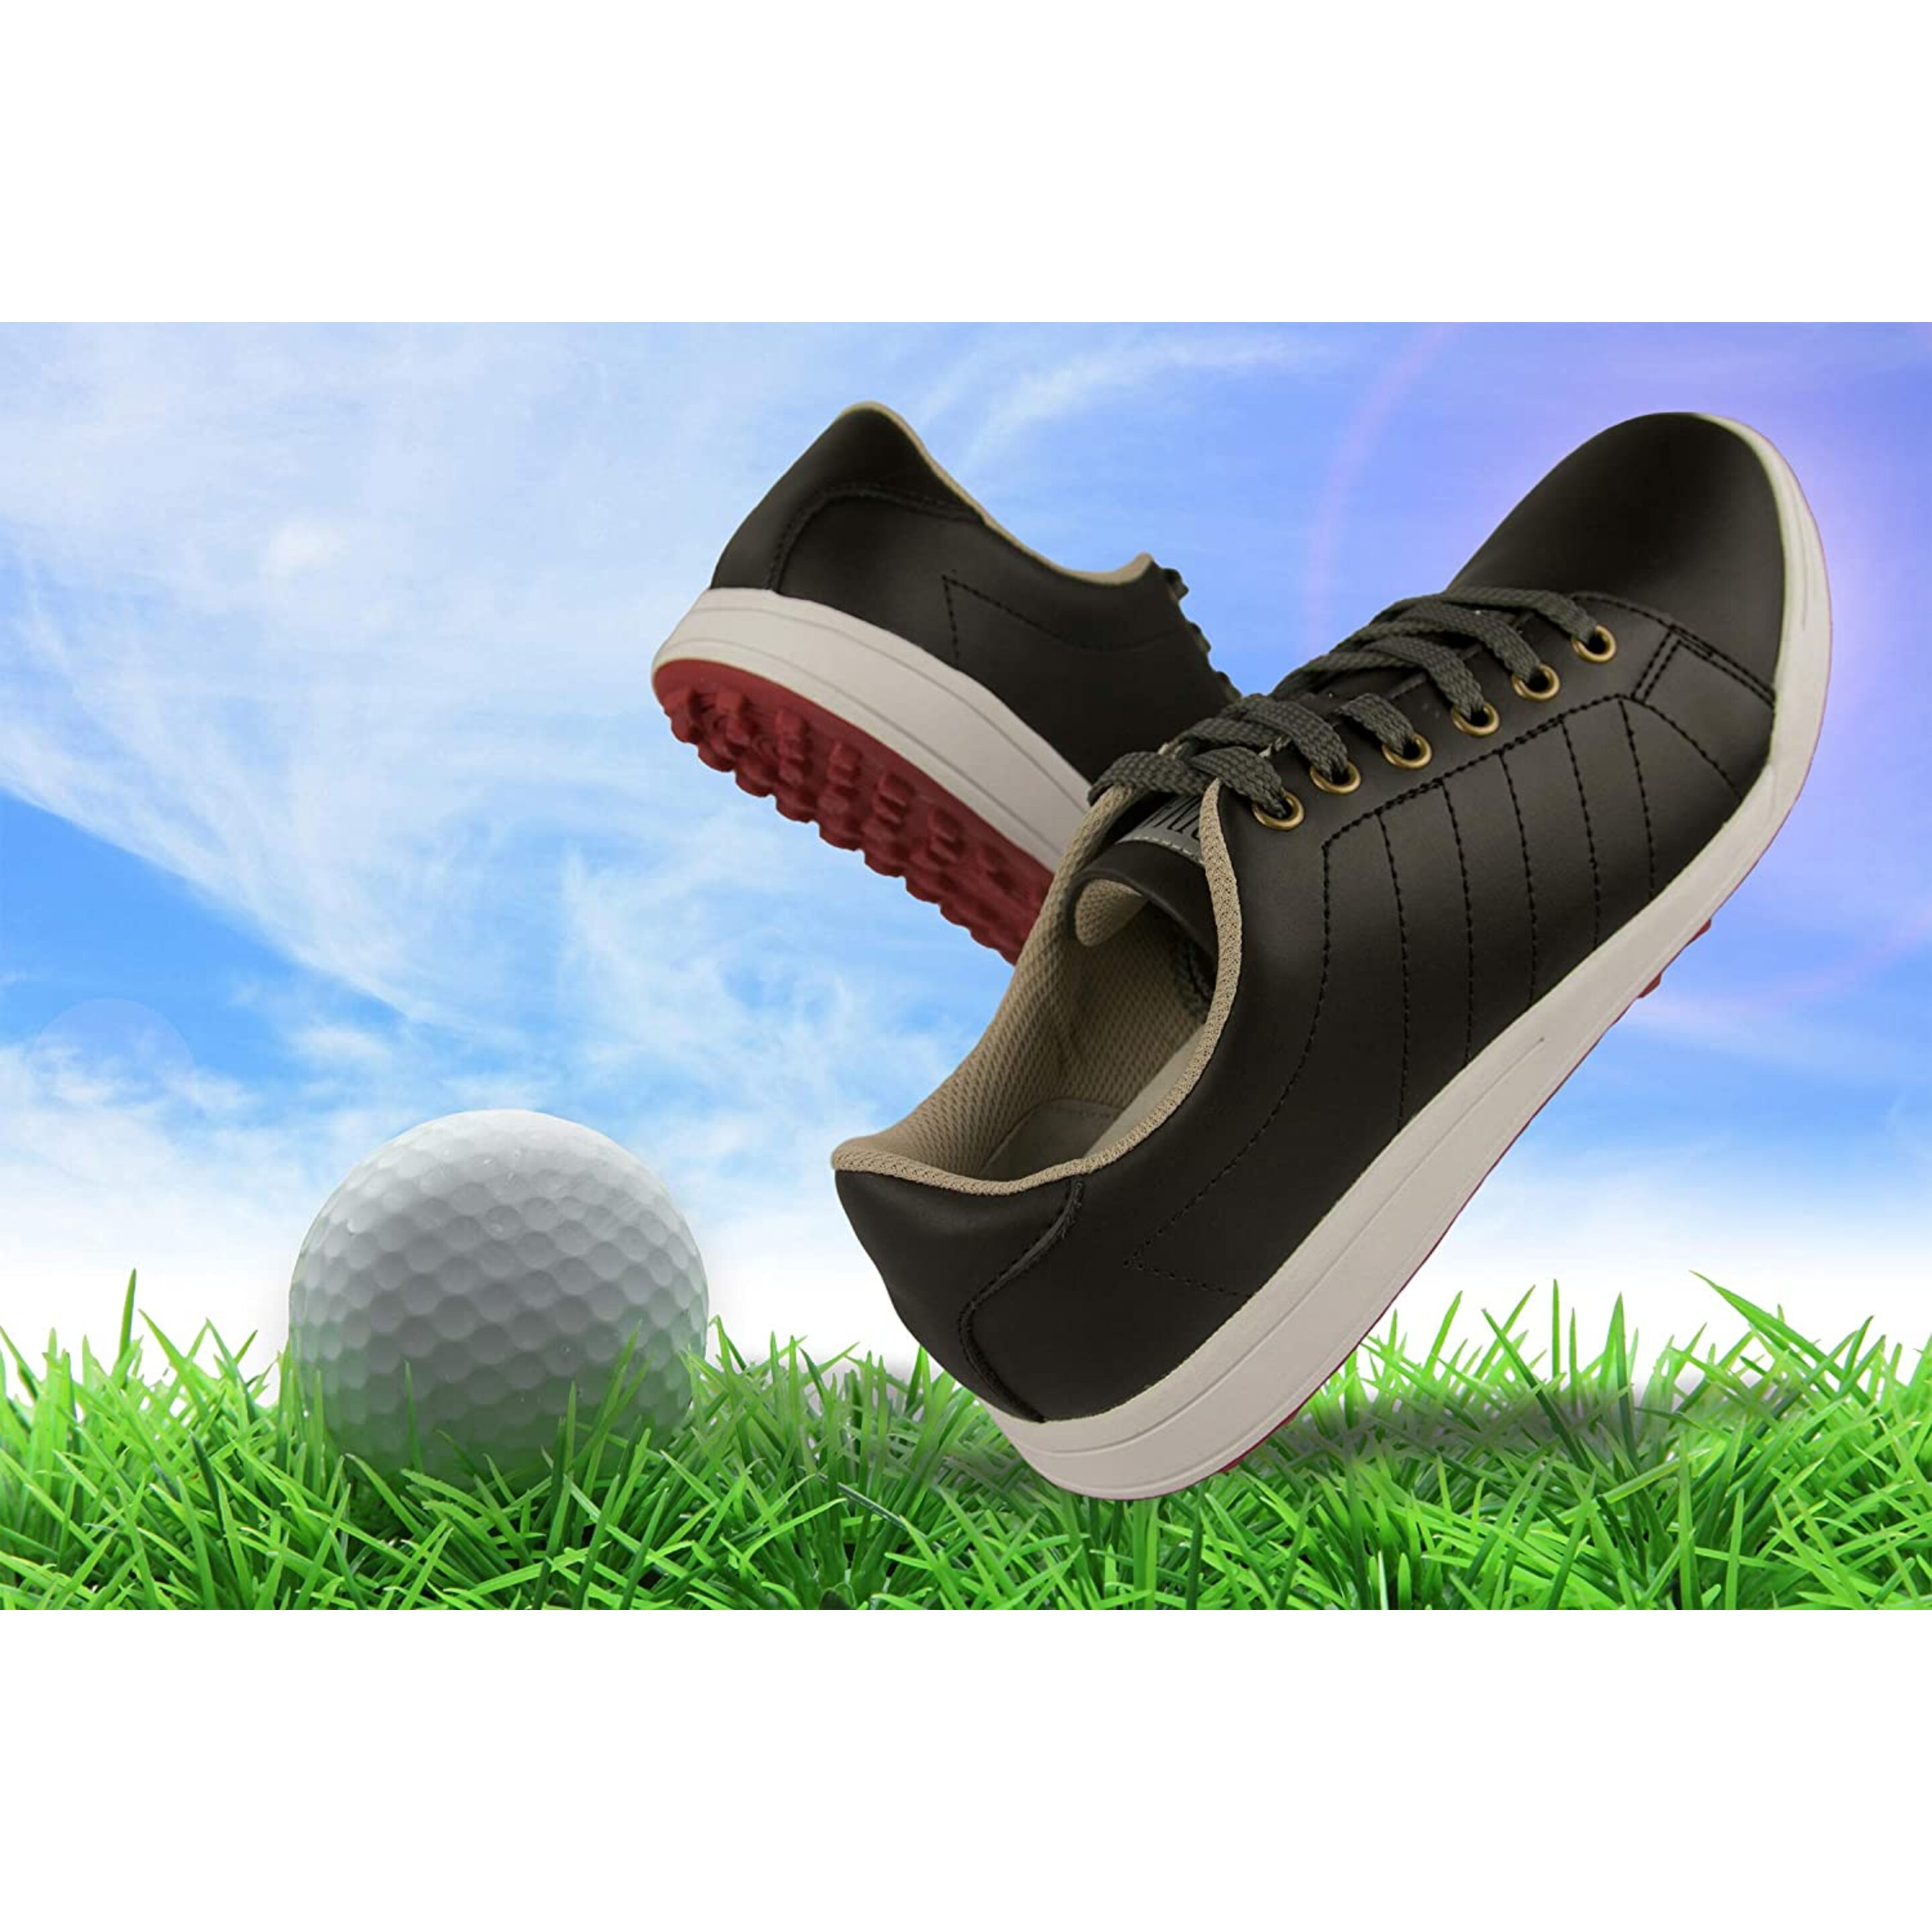 Zerimar Zapatos De Golf Hombre |zapatos Golf Piel | Zapatos Hombre Deportivos | Zapatillas De Golf